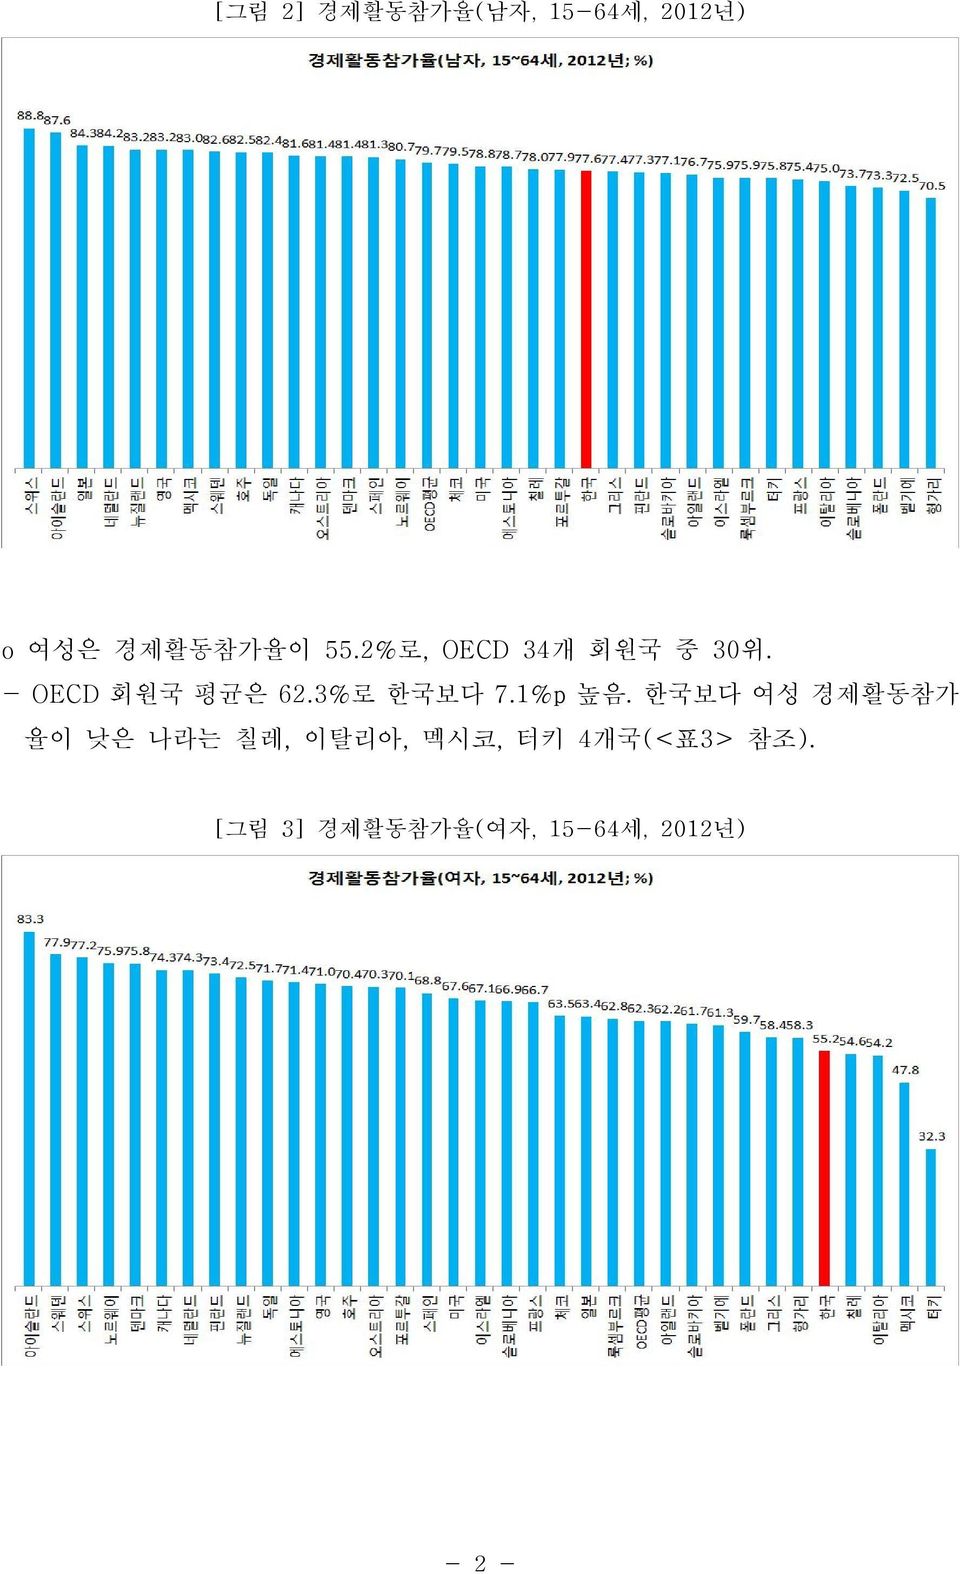 3%로 한국보다 7.1%p 높음.